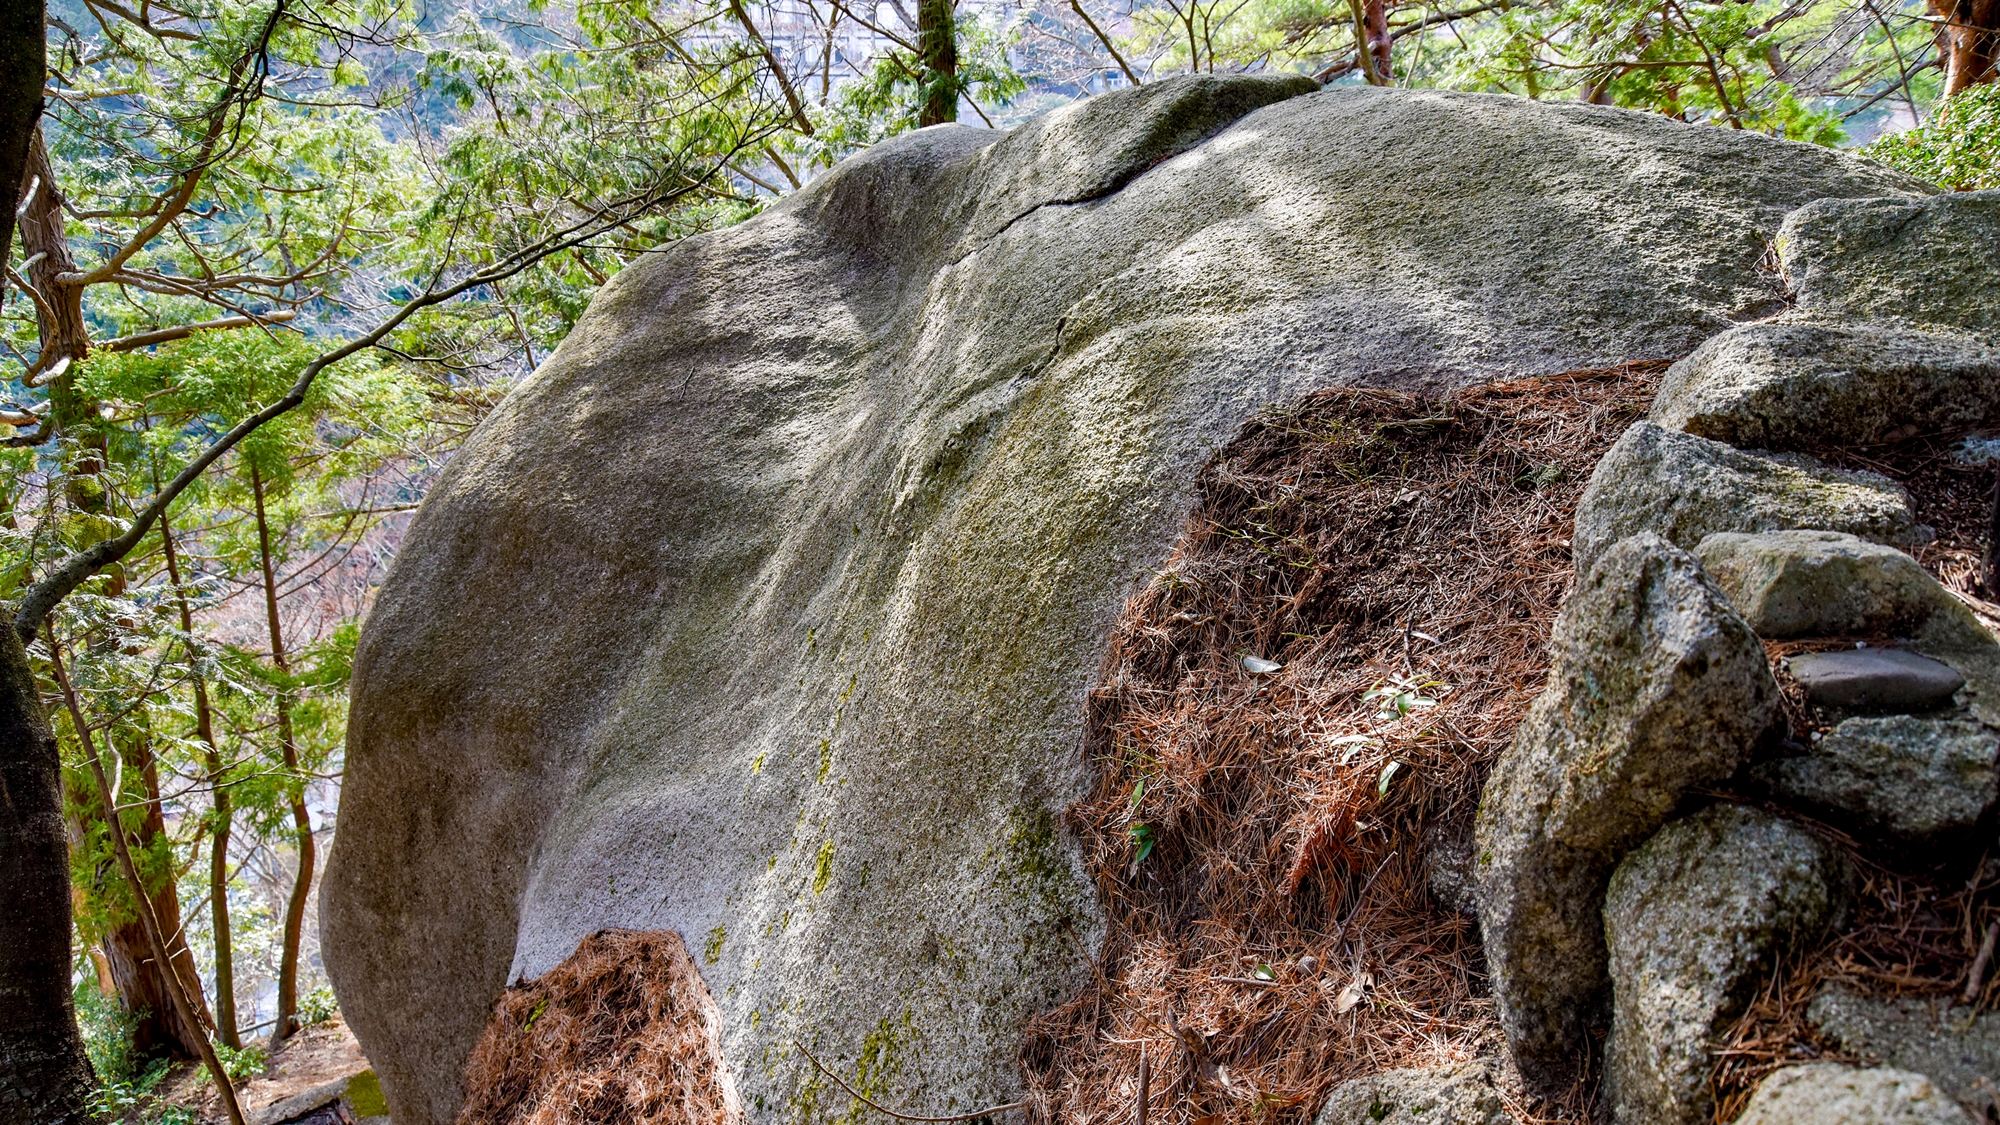 【*大黒様】湯の山にはこんなに大きな岩があり、それに大黒様を彫ったのです。